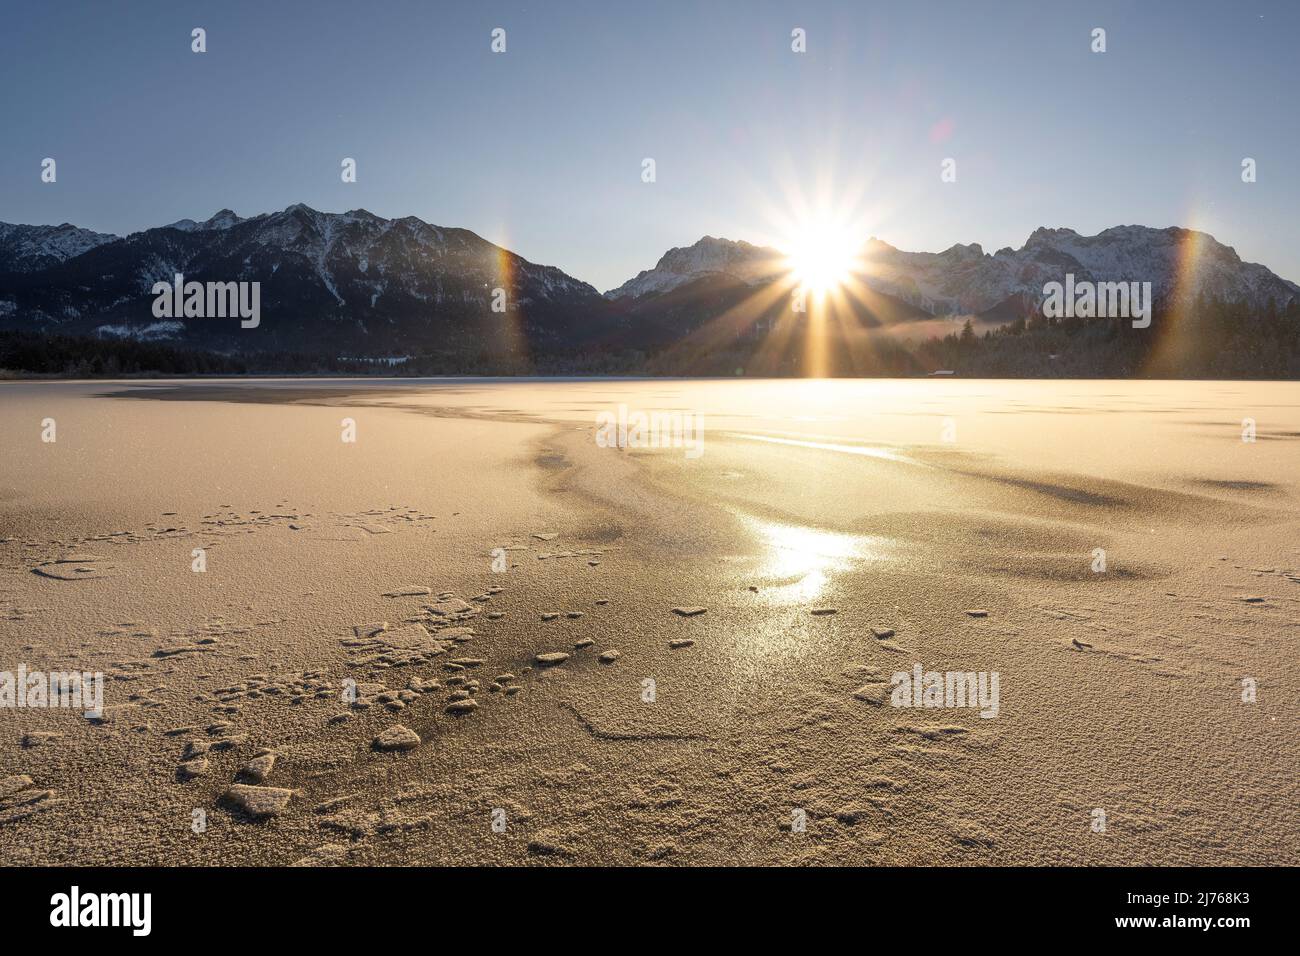 Durante el amanecer, un arco iris formado por pequeños cristales de hielo apareció contra la luz del sol en la orilla del Barmsee. Un pequeño lago de páramos en los Alpes alemanes. En el fondo el Karwendel, en el primer plano pistas en el hielo. Foto de stock